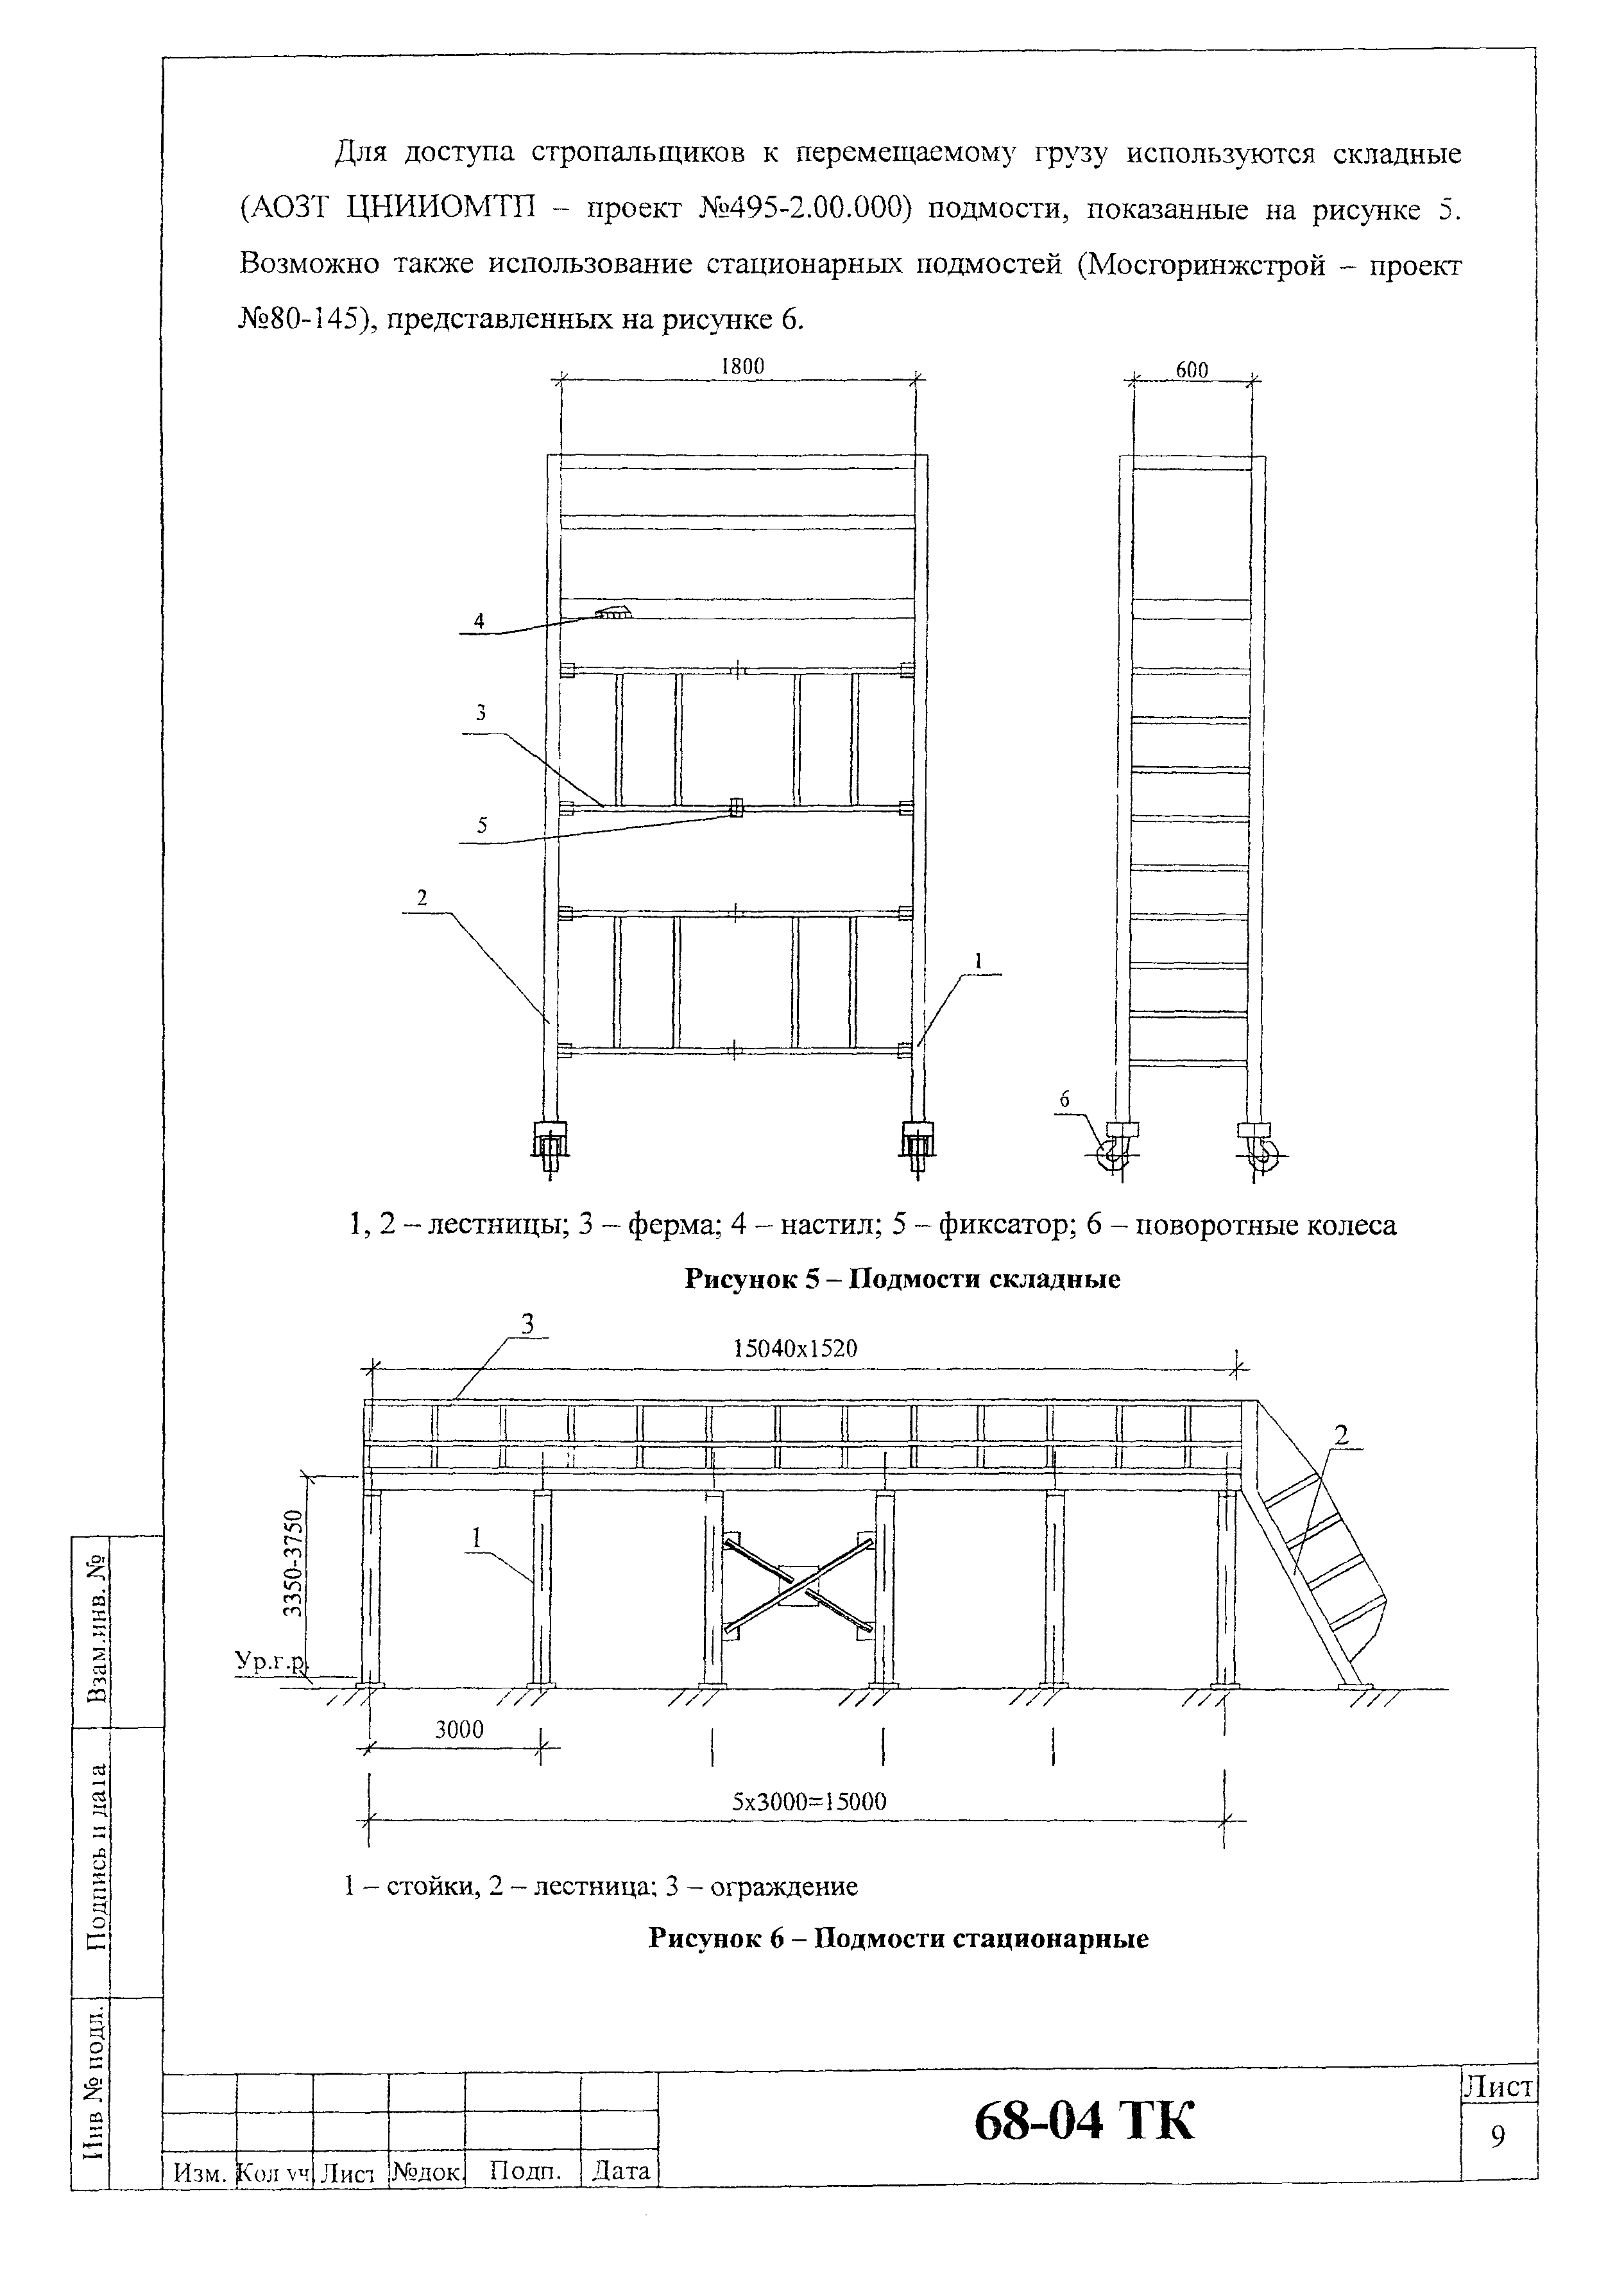 Технологическая карта 68-04 ТК